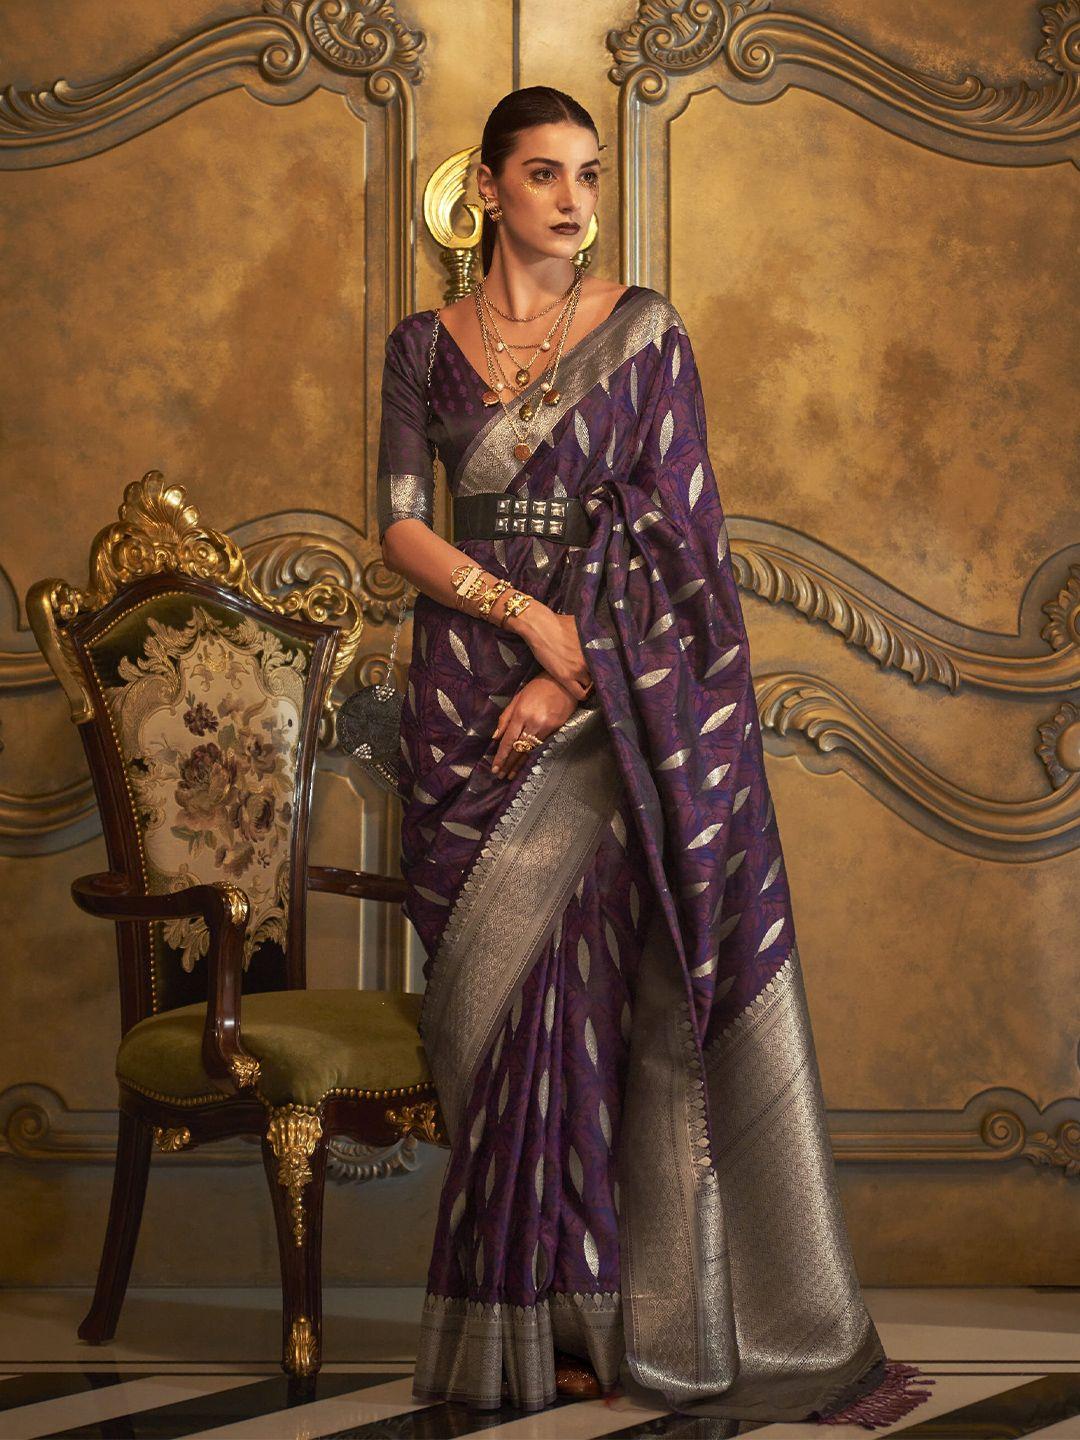 elora ethnic motifs woven design zari banarasi saree